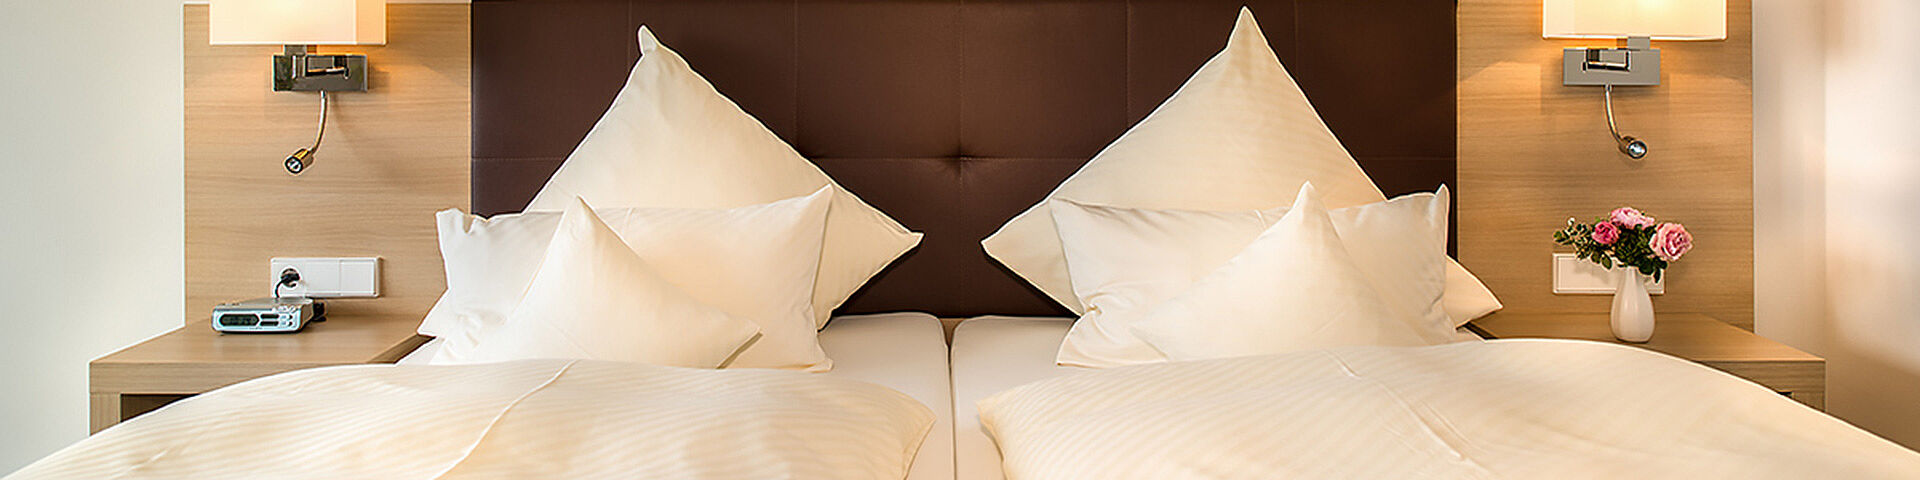 Ein Doppelbett mit Kissen und Bettdecke ist zu sehen.